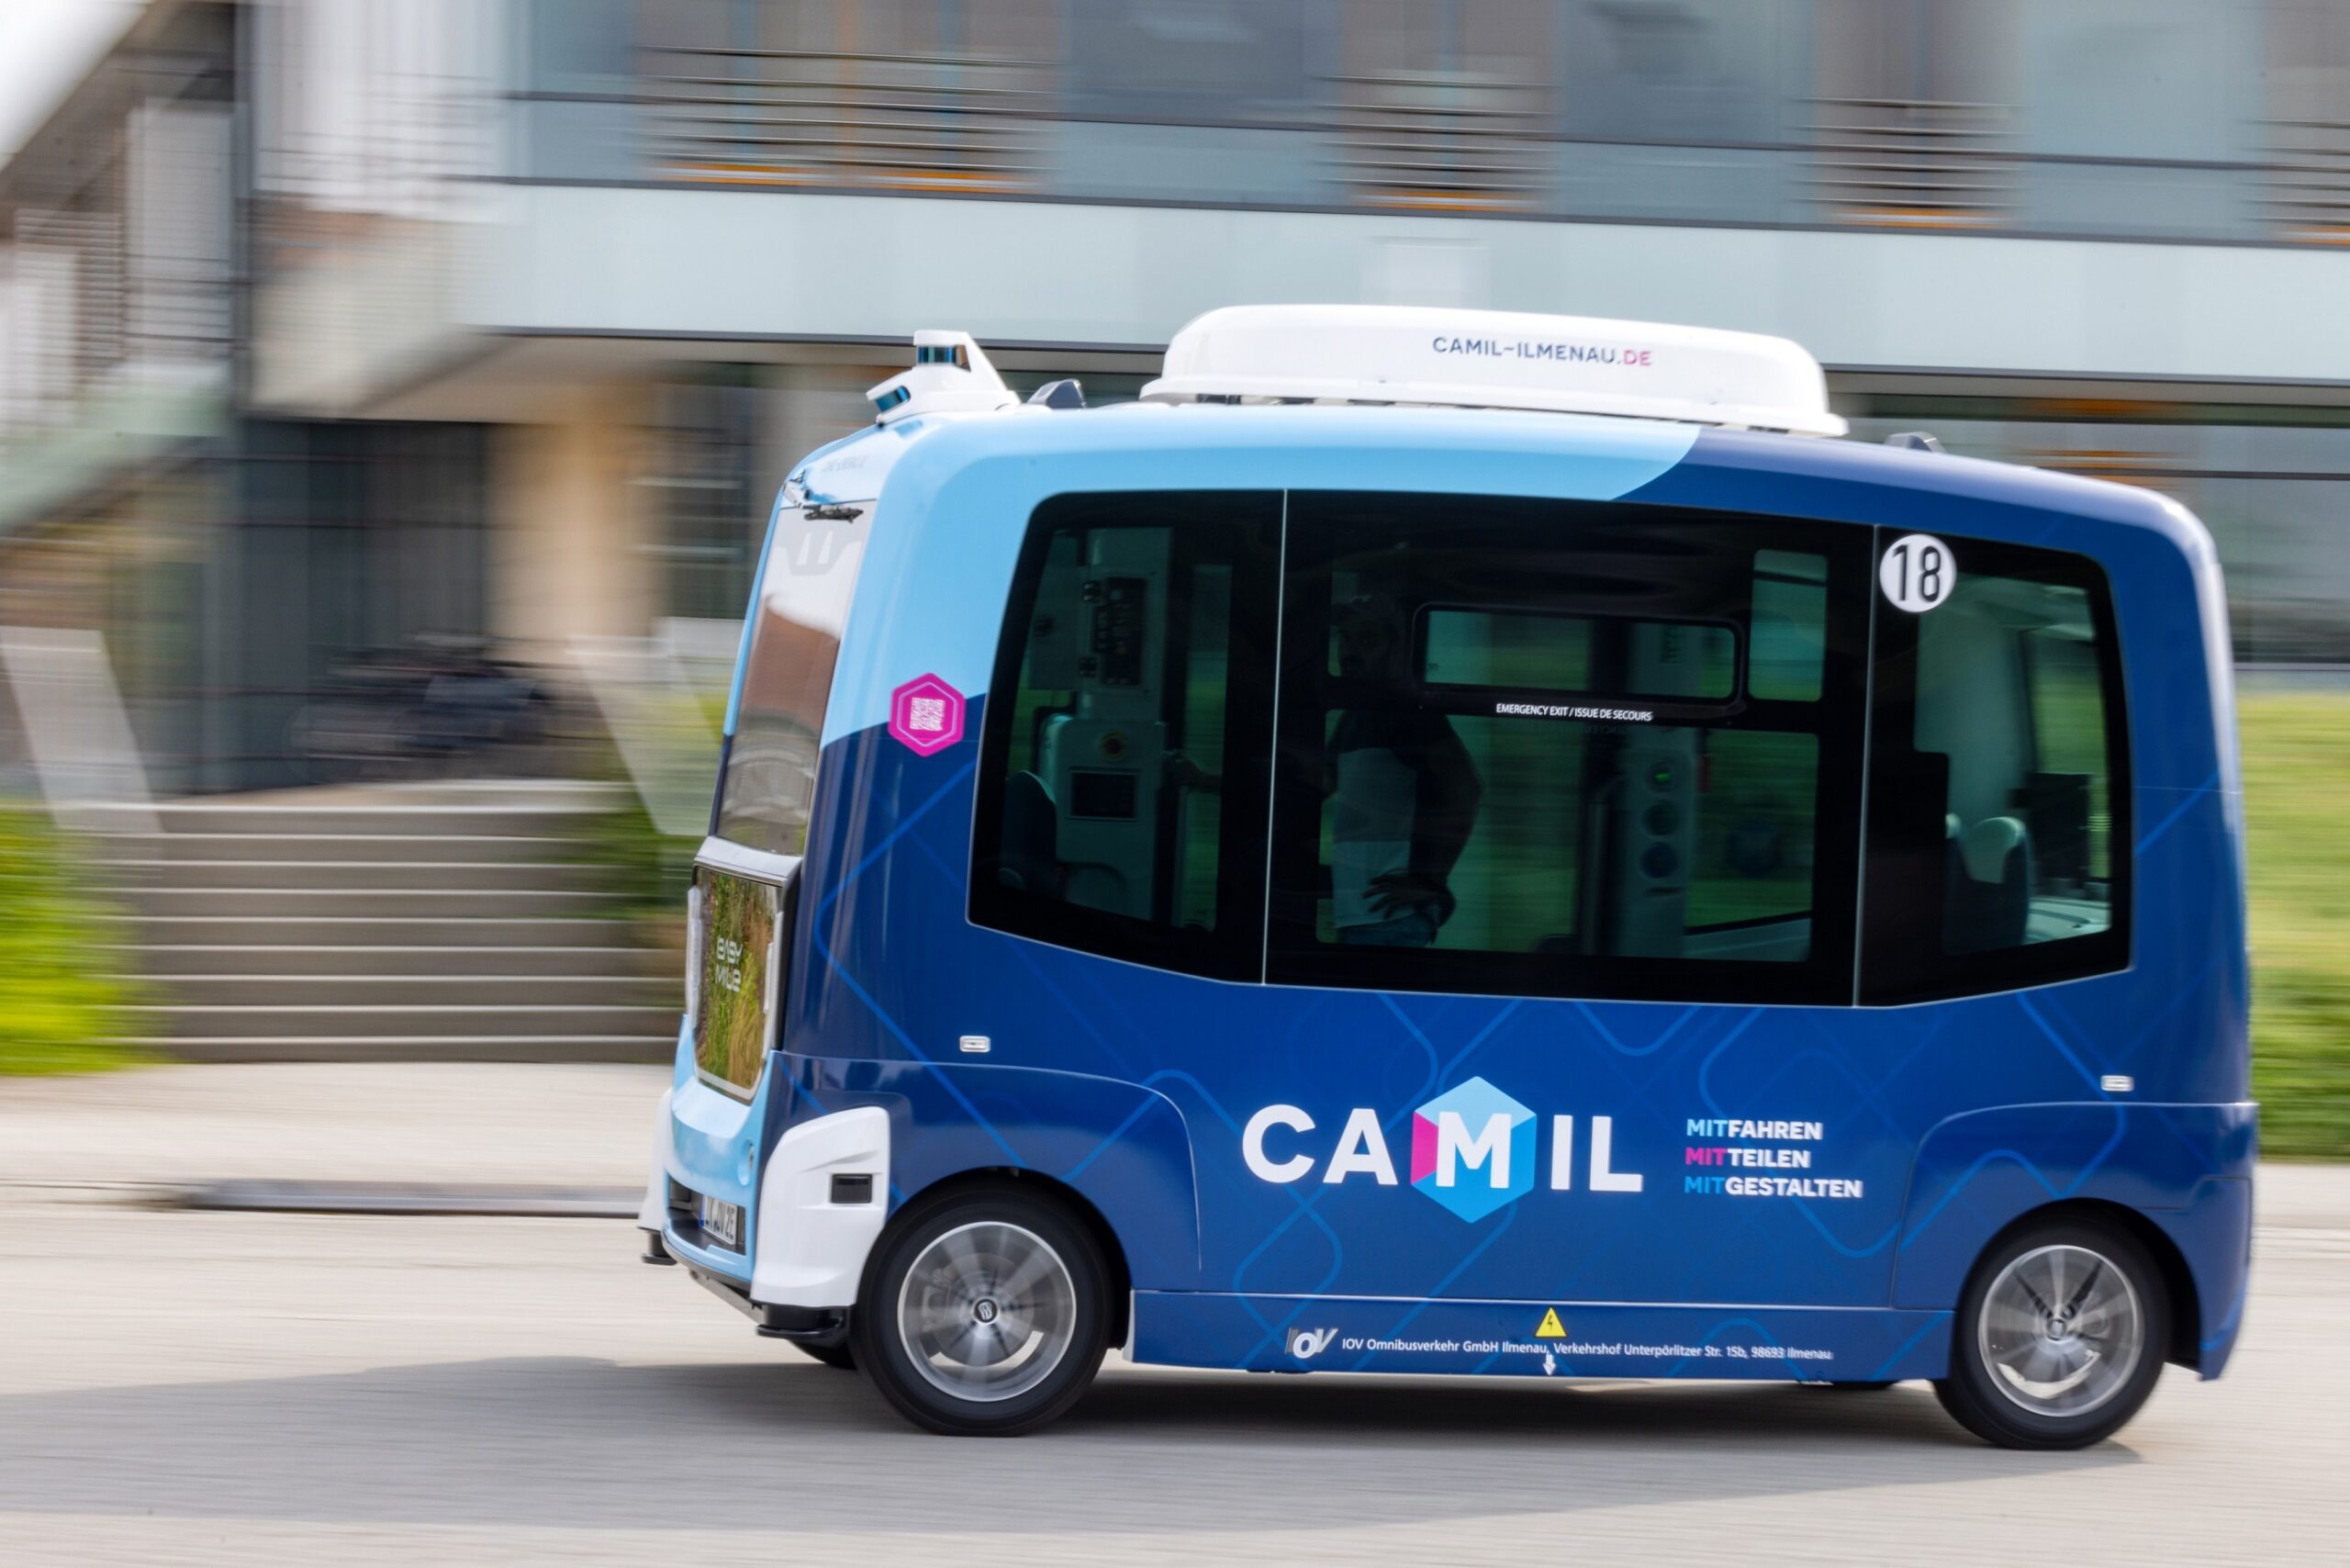 CAMIL - ein kleiner fahrerloser Shuttlebus als Verkehrsangebot der Stadt Ilmenau